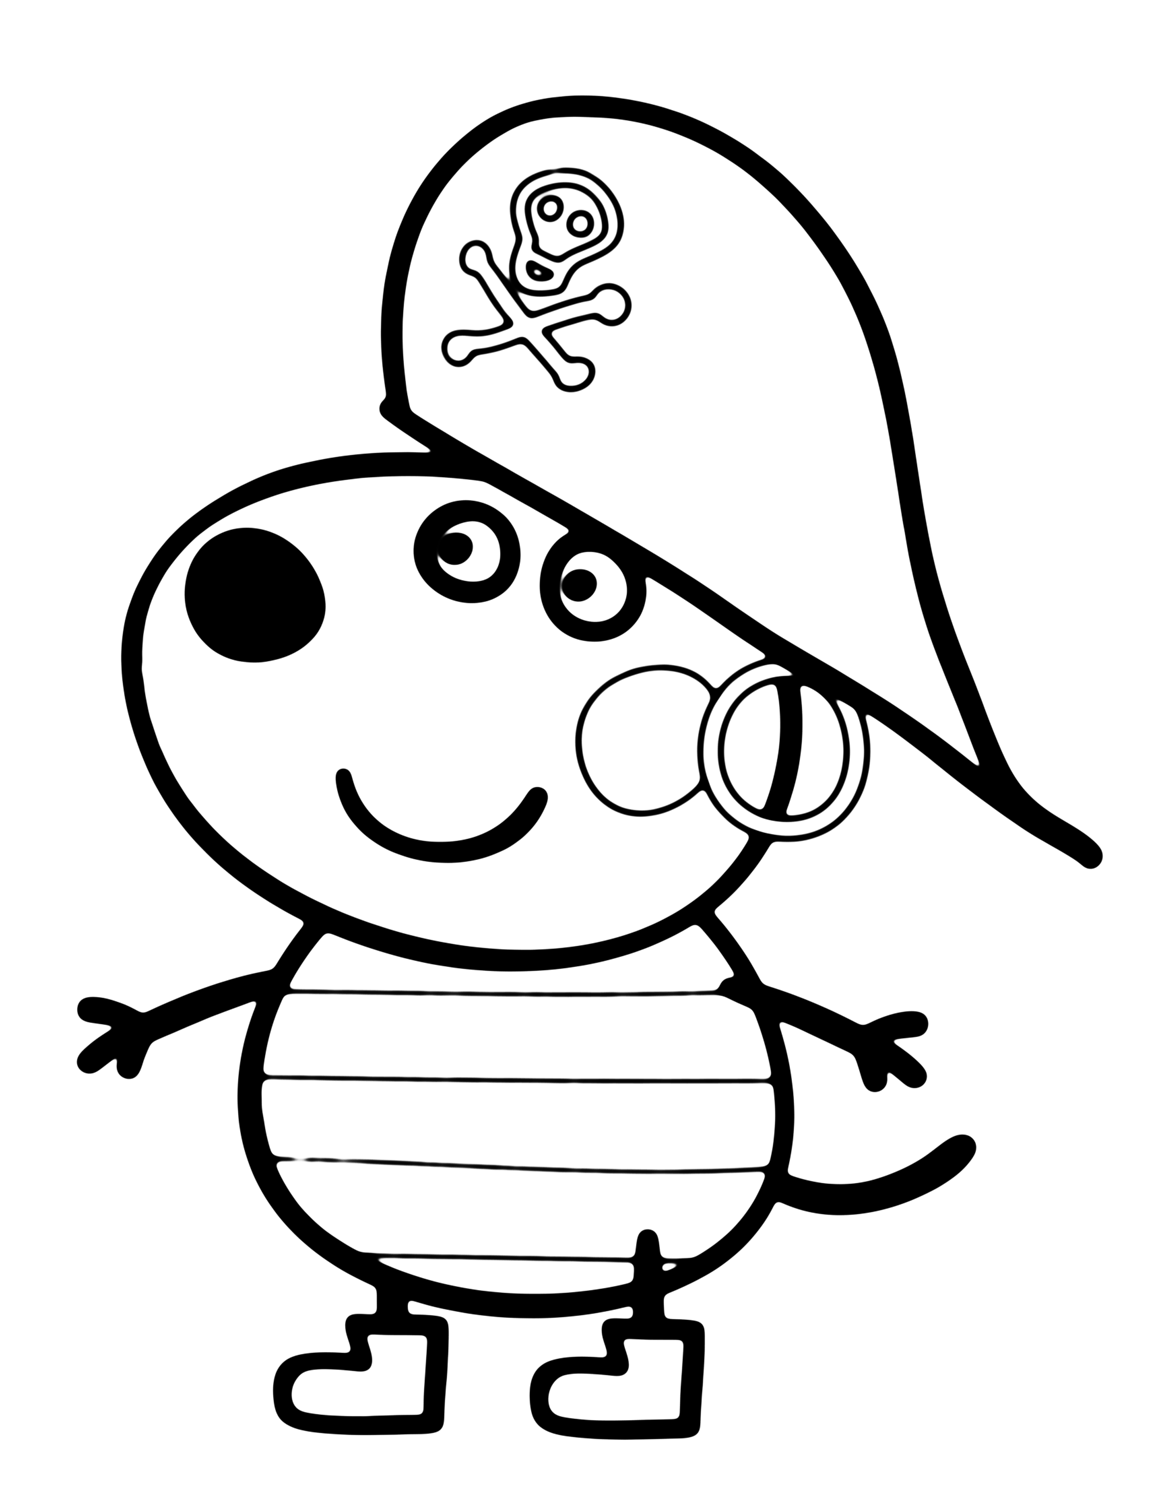 Amico di Peppa Pig vestito da pirata disegno da colorare gratis